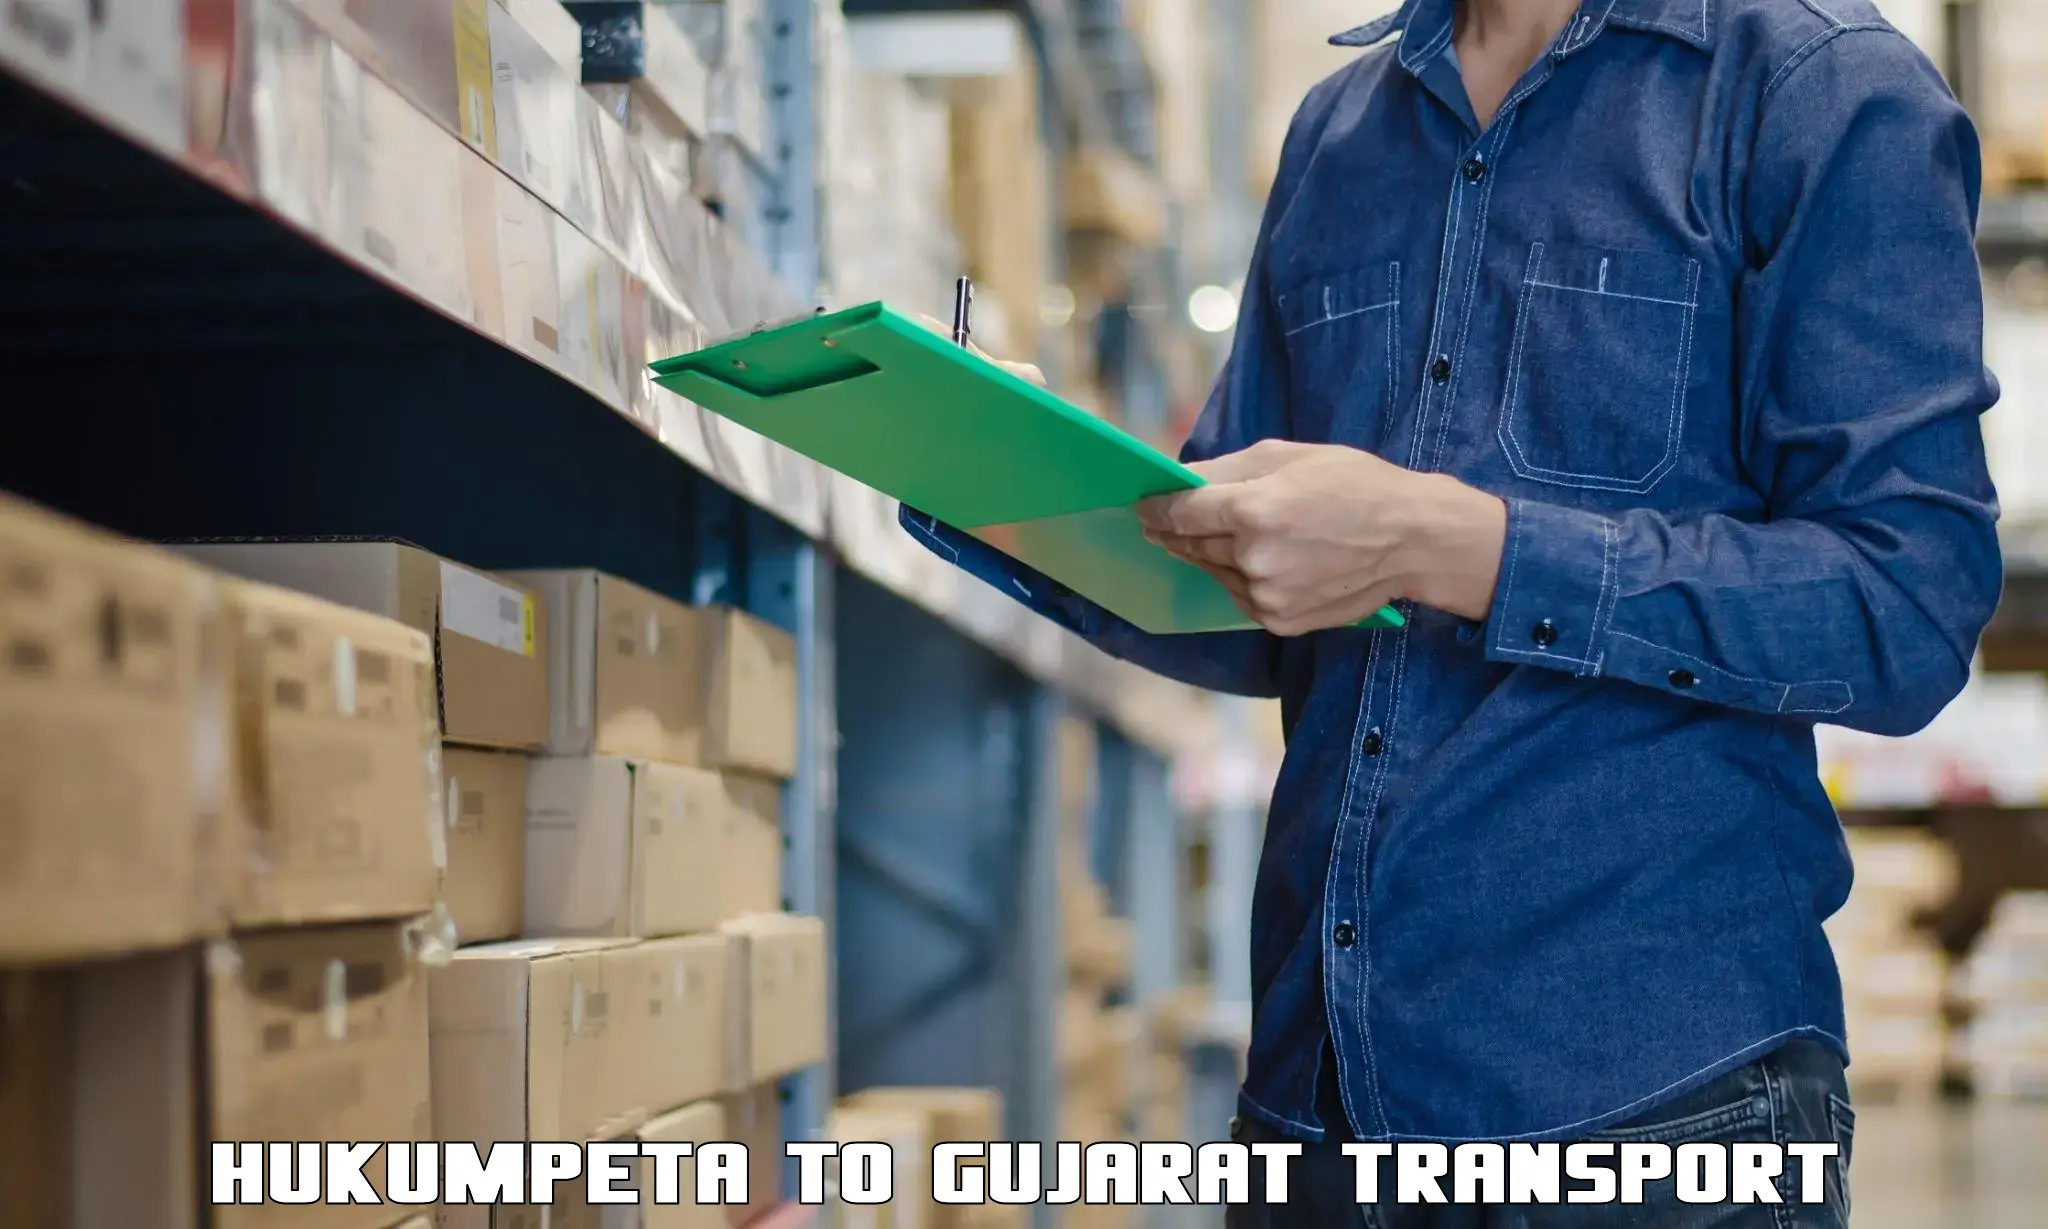 Delivery service Hukumpeta to Gujarat